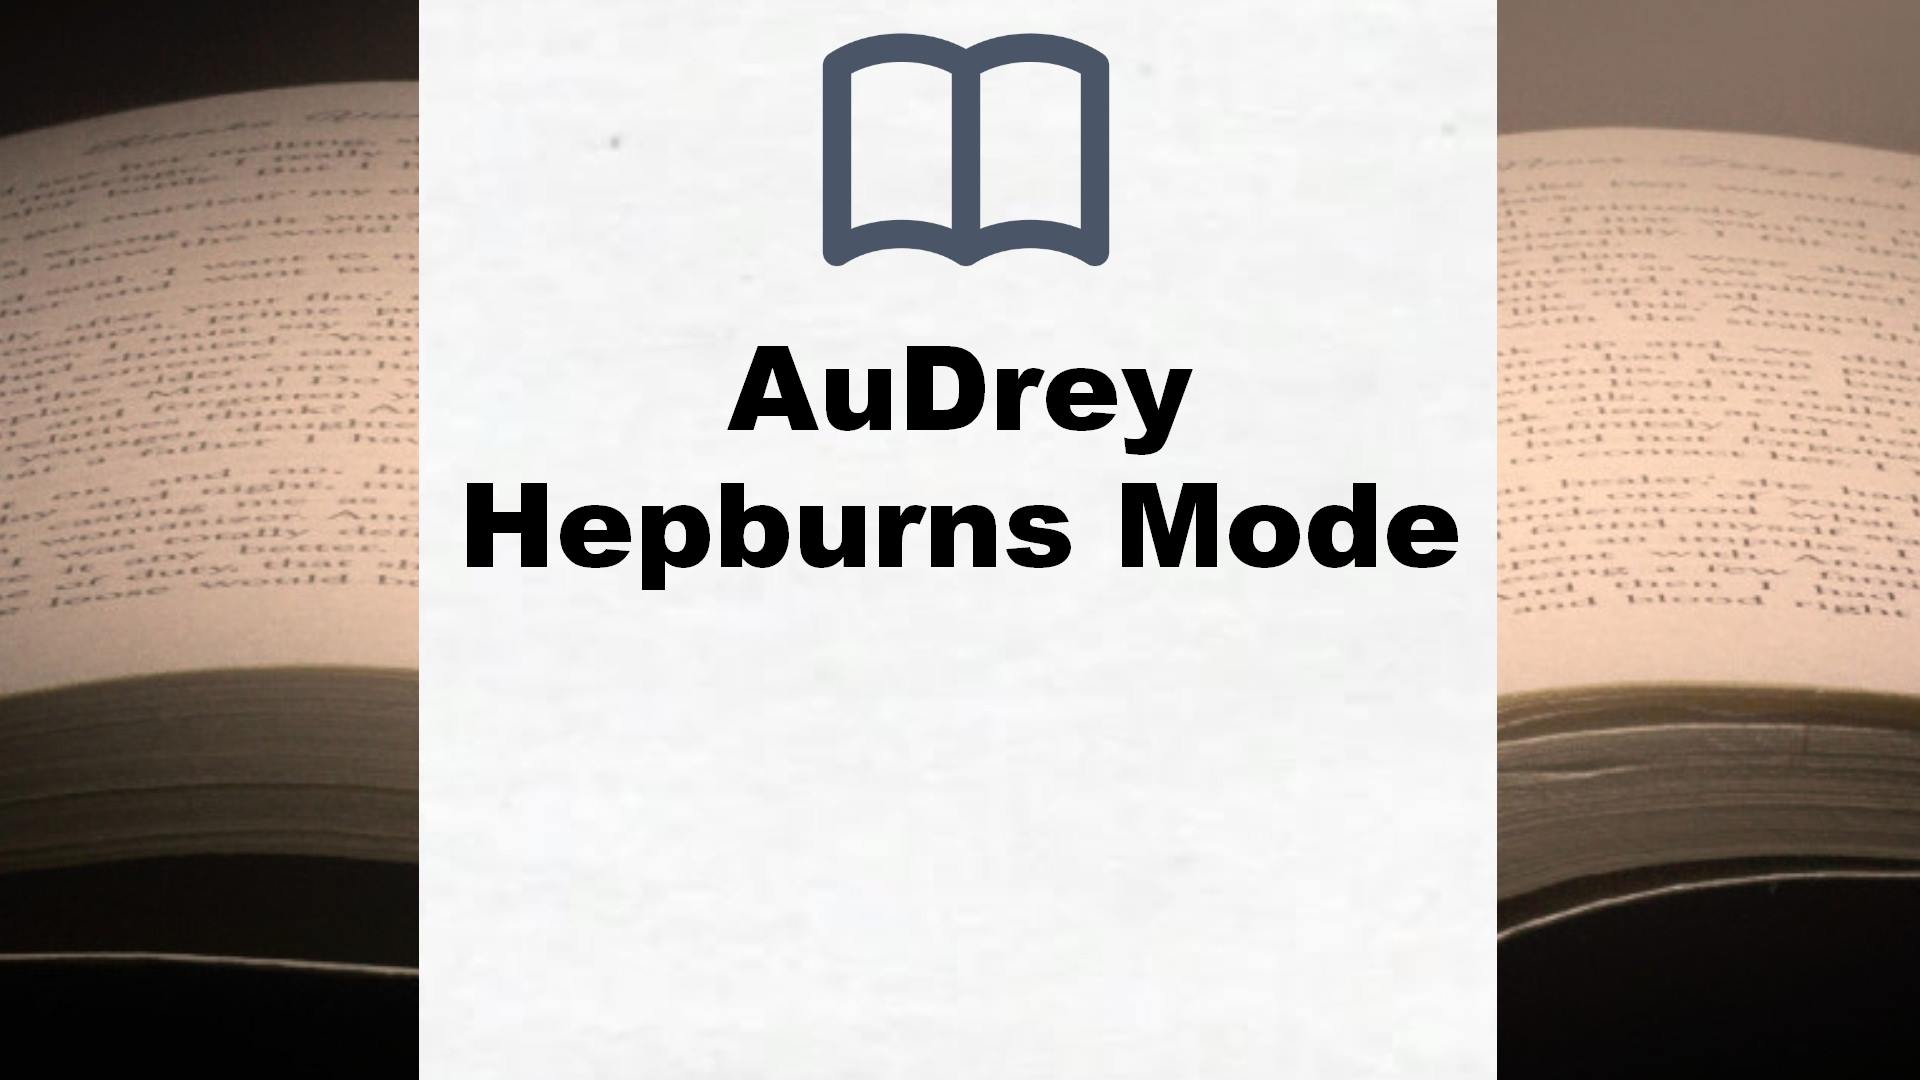 Bücher über AuDrey Hepburns Mode